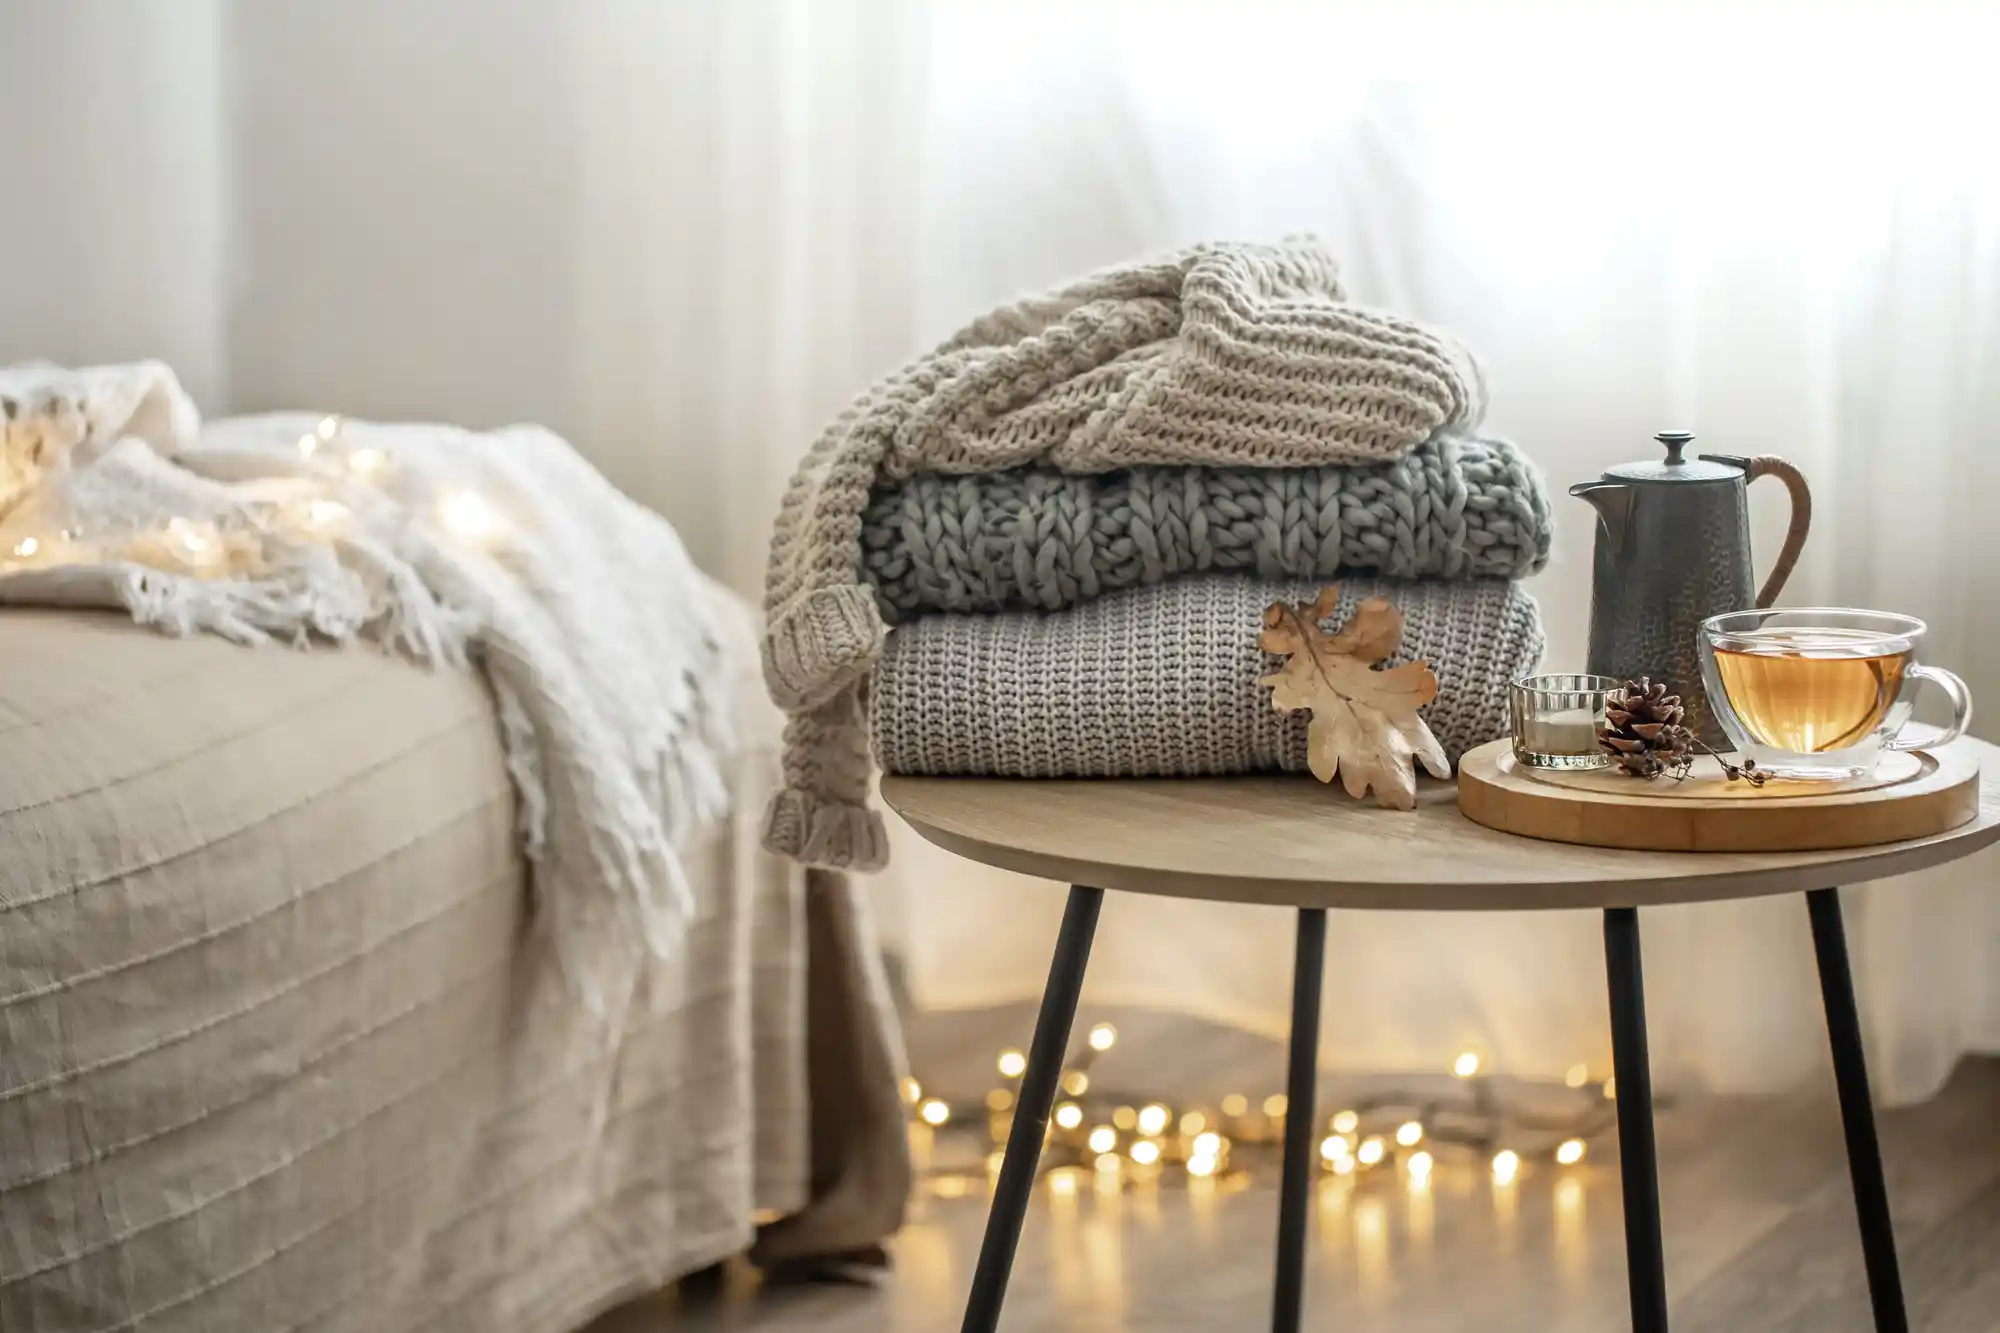 Casa aconchegante no inverno: foto de casacos empilhados, com chá e, ao lado, uma cama com cobertas.